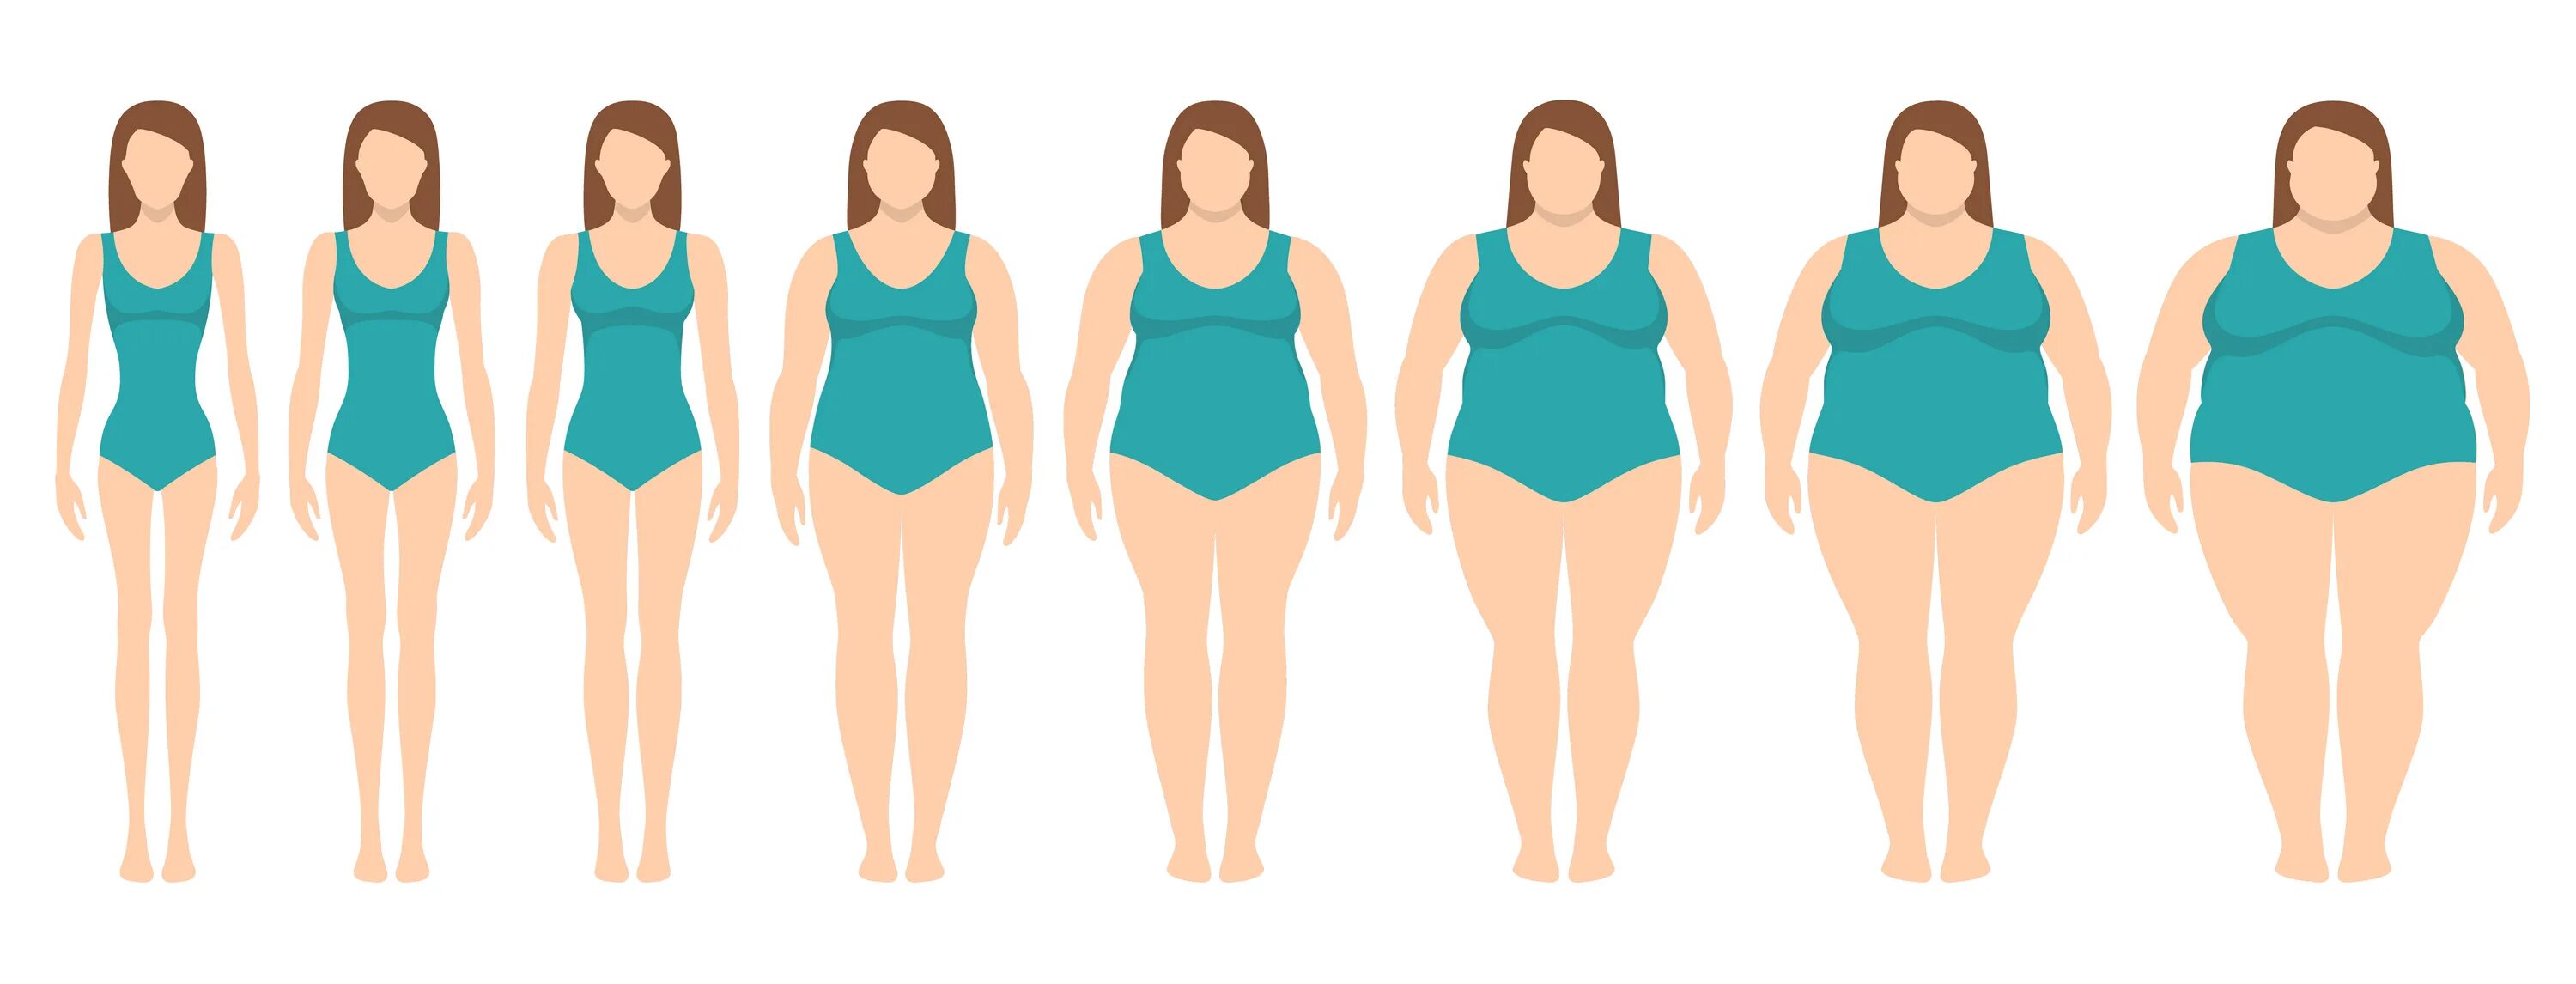 От толстой к стройной фигуре. Женщины разной комплекции. Женщины разных фигур и телосложений. Типы женского телосложения от худых до толстых.